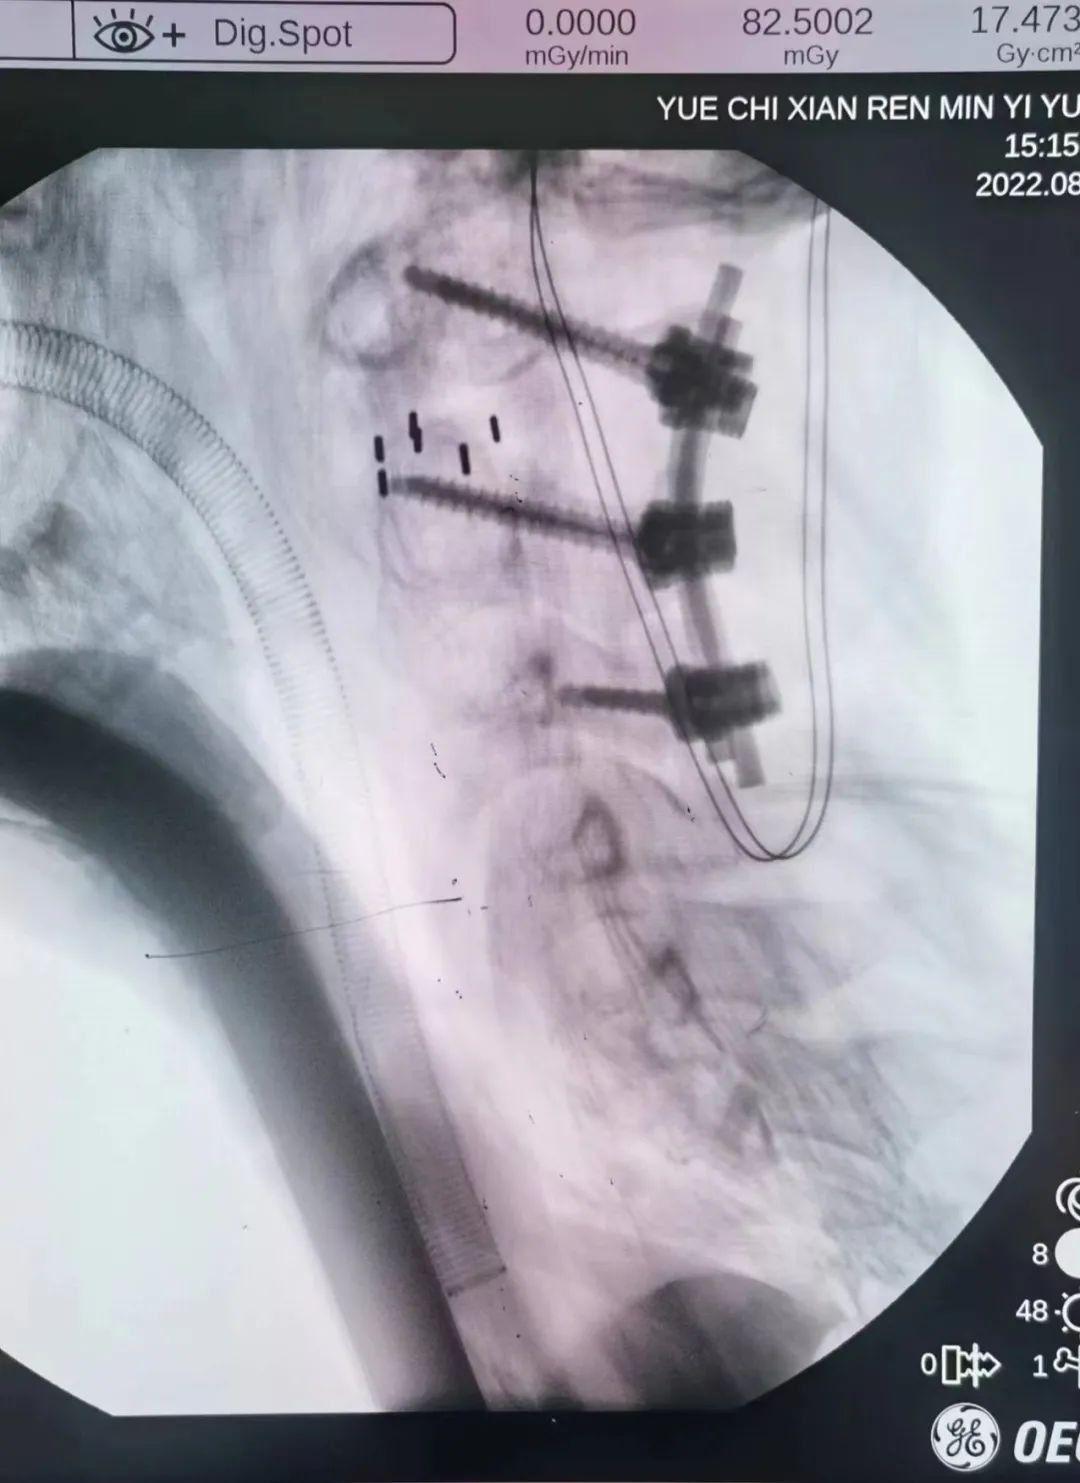 岳池县人民医院脊柱脊髓外科成功为 15 岁脑瘫患者施行高难度颈椎手术